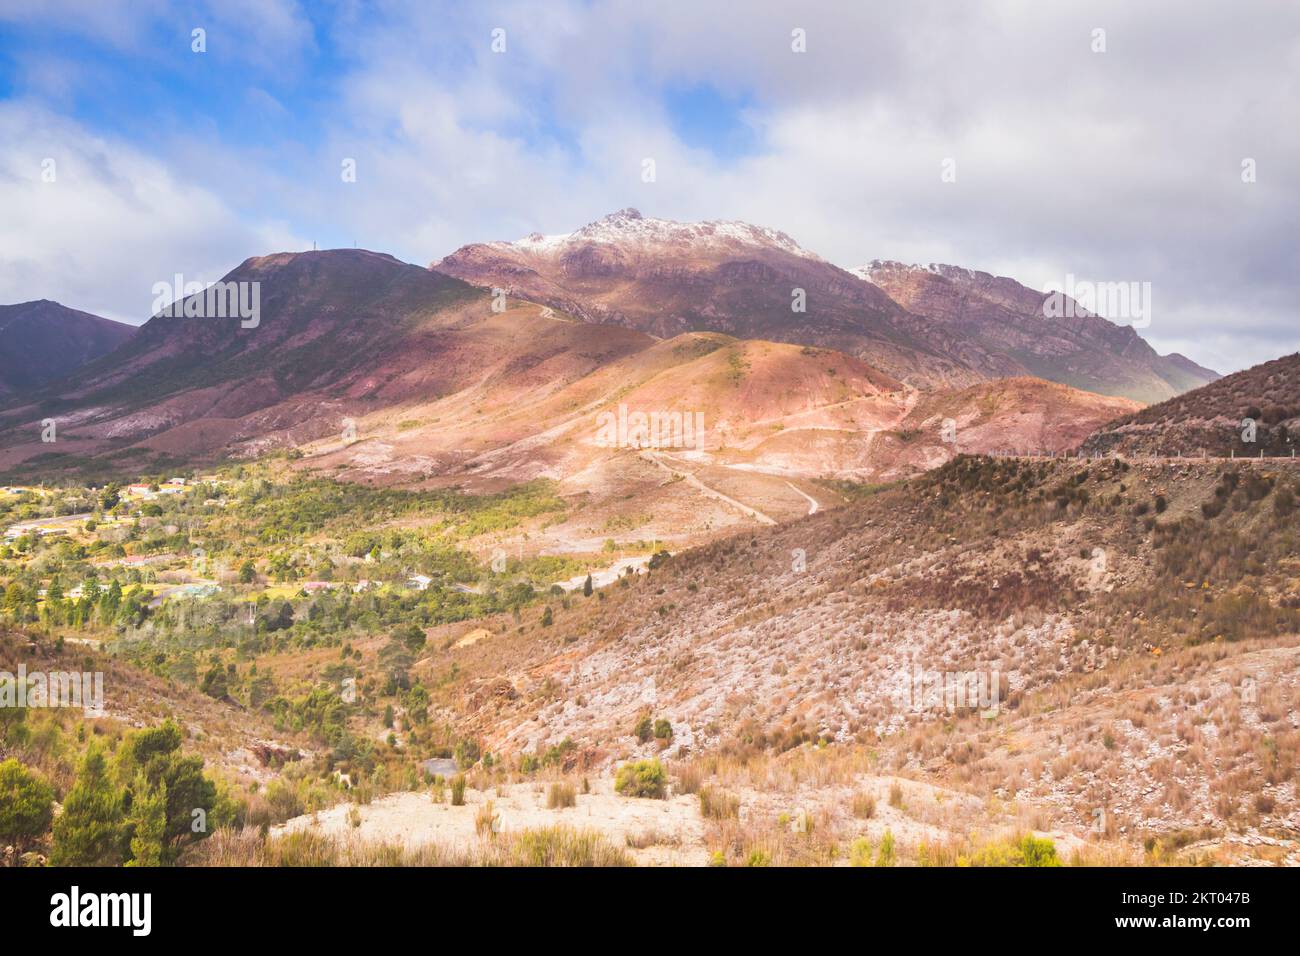 Majestätische Berglandschaft auf einem traumhaften Hügel mit verschiedenen Farben und Gelände. Gormanston, Westtasmanien, Australien Stockfoto